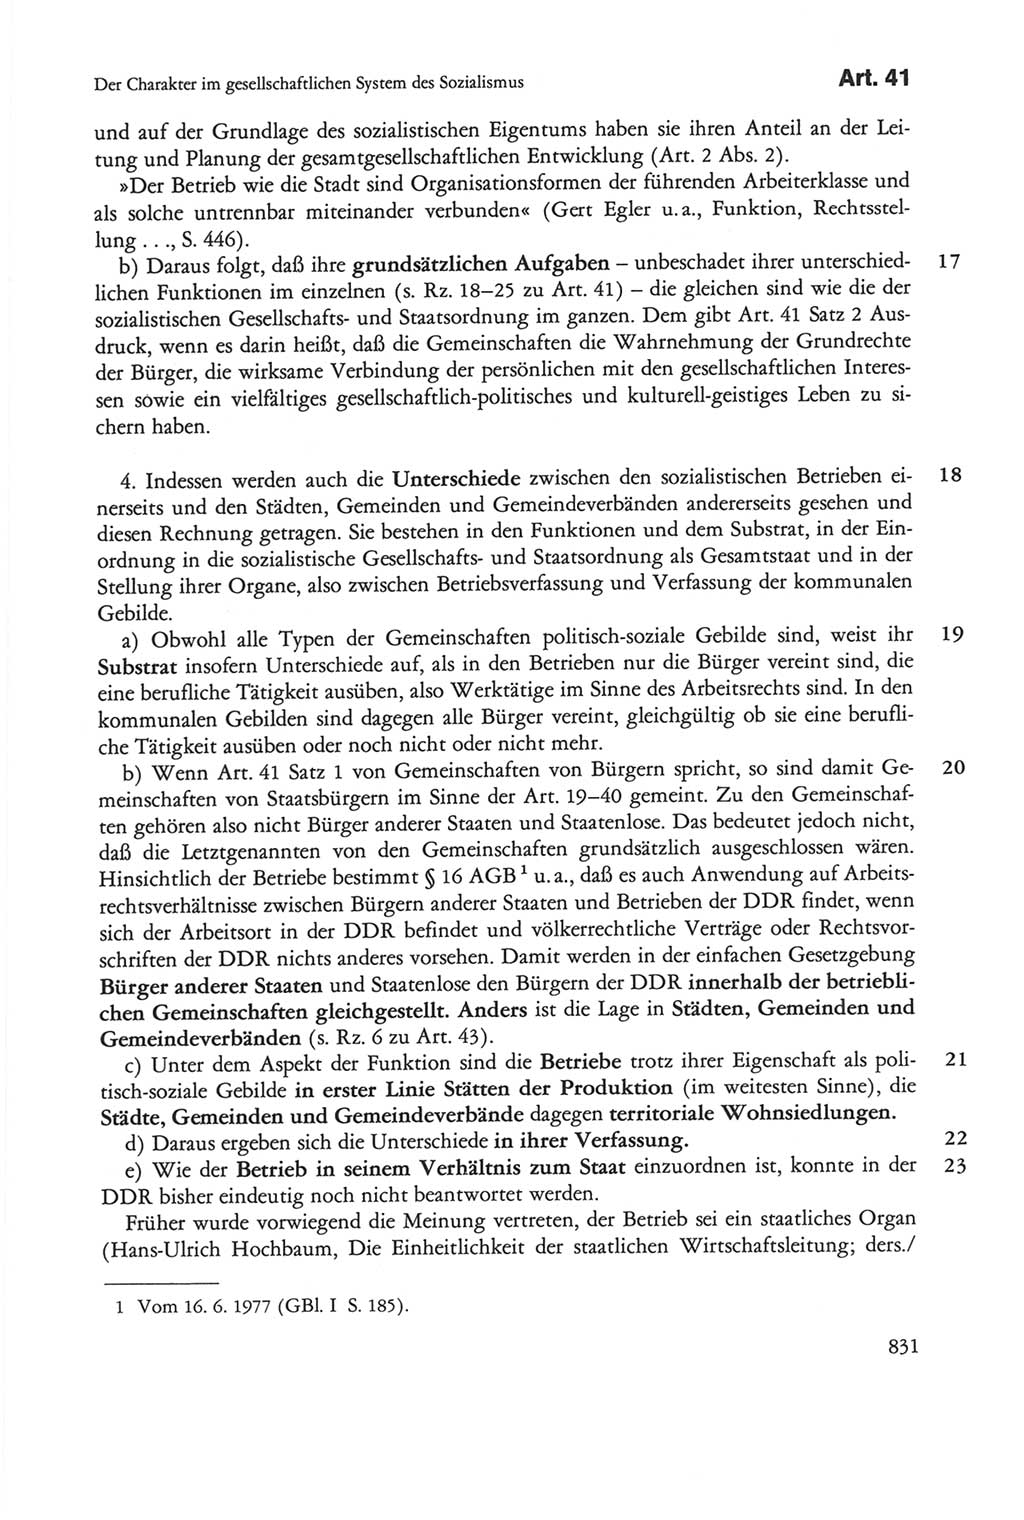 Die sozialistische Verfassung der Deutschen Demokratischen Republik (DDR), Kommentar 1982, Seite 831 (Soz. Verf. DDR Komm. 1982, S. 831)